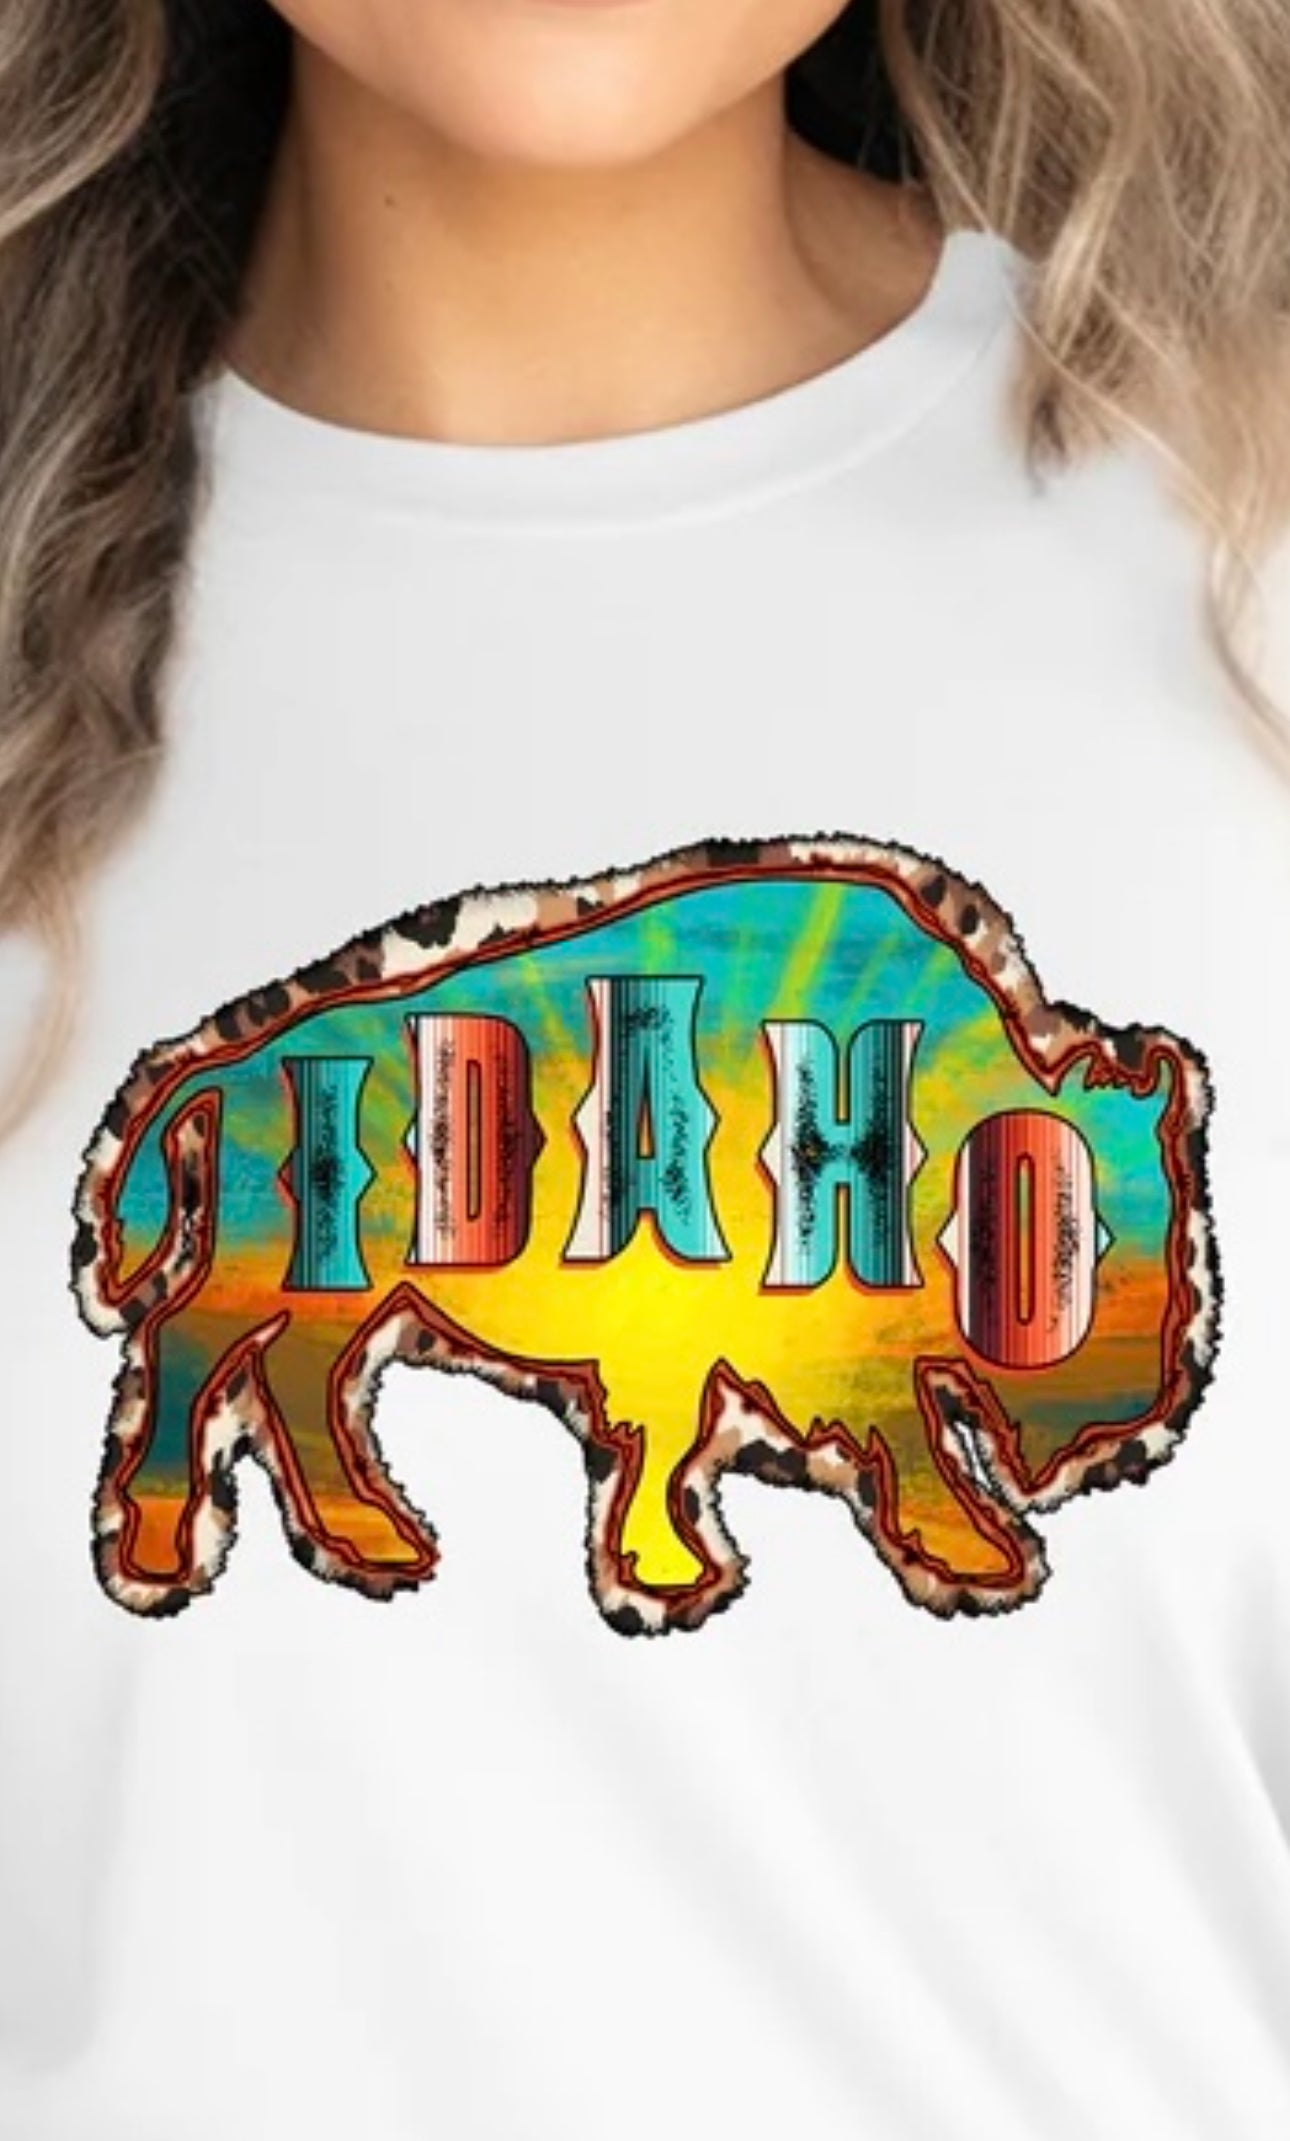 Idaho Buffalo T-Shirt or Sweatshirt